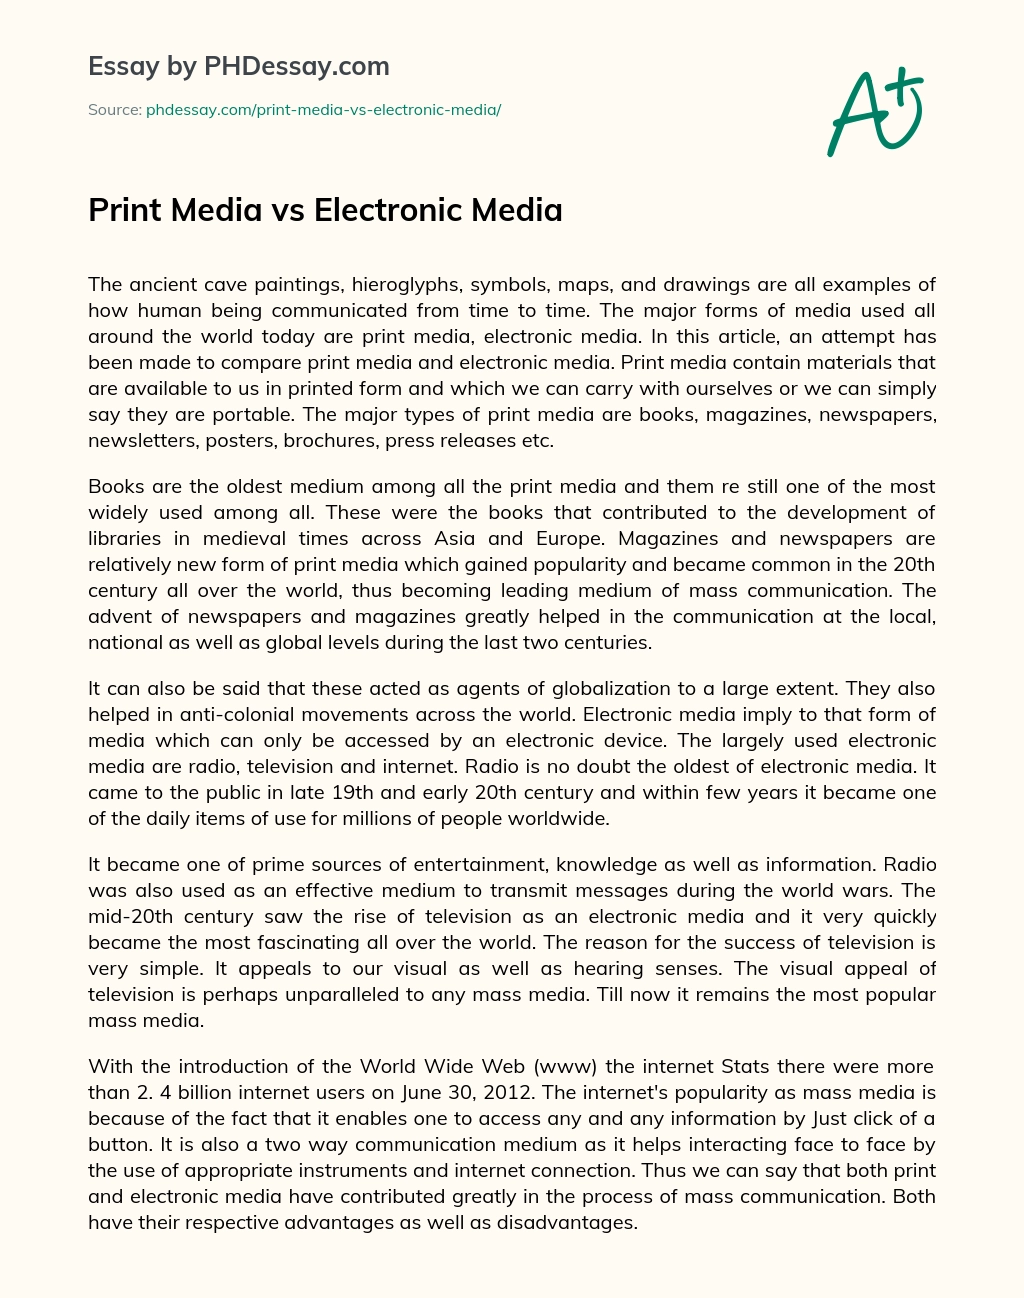 print media vs electronic media essay in hindi